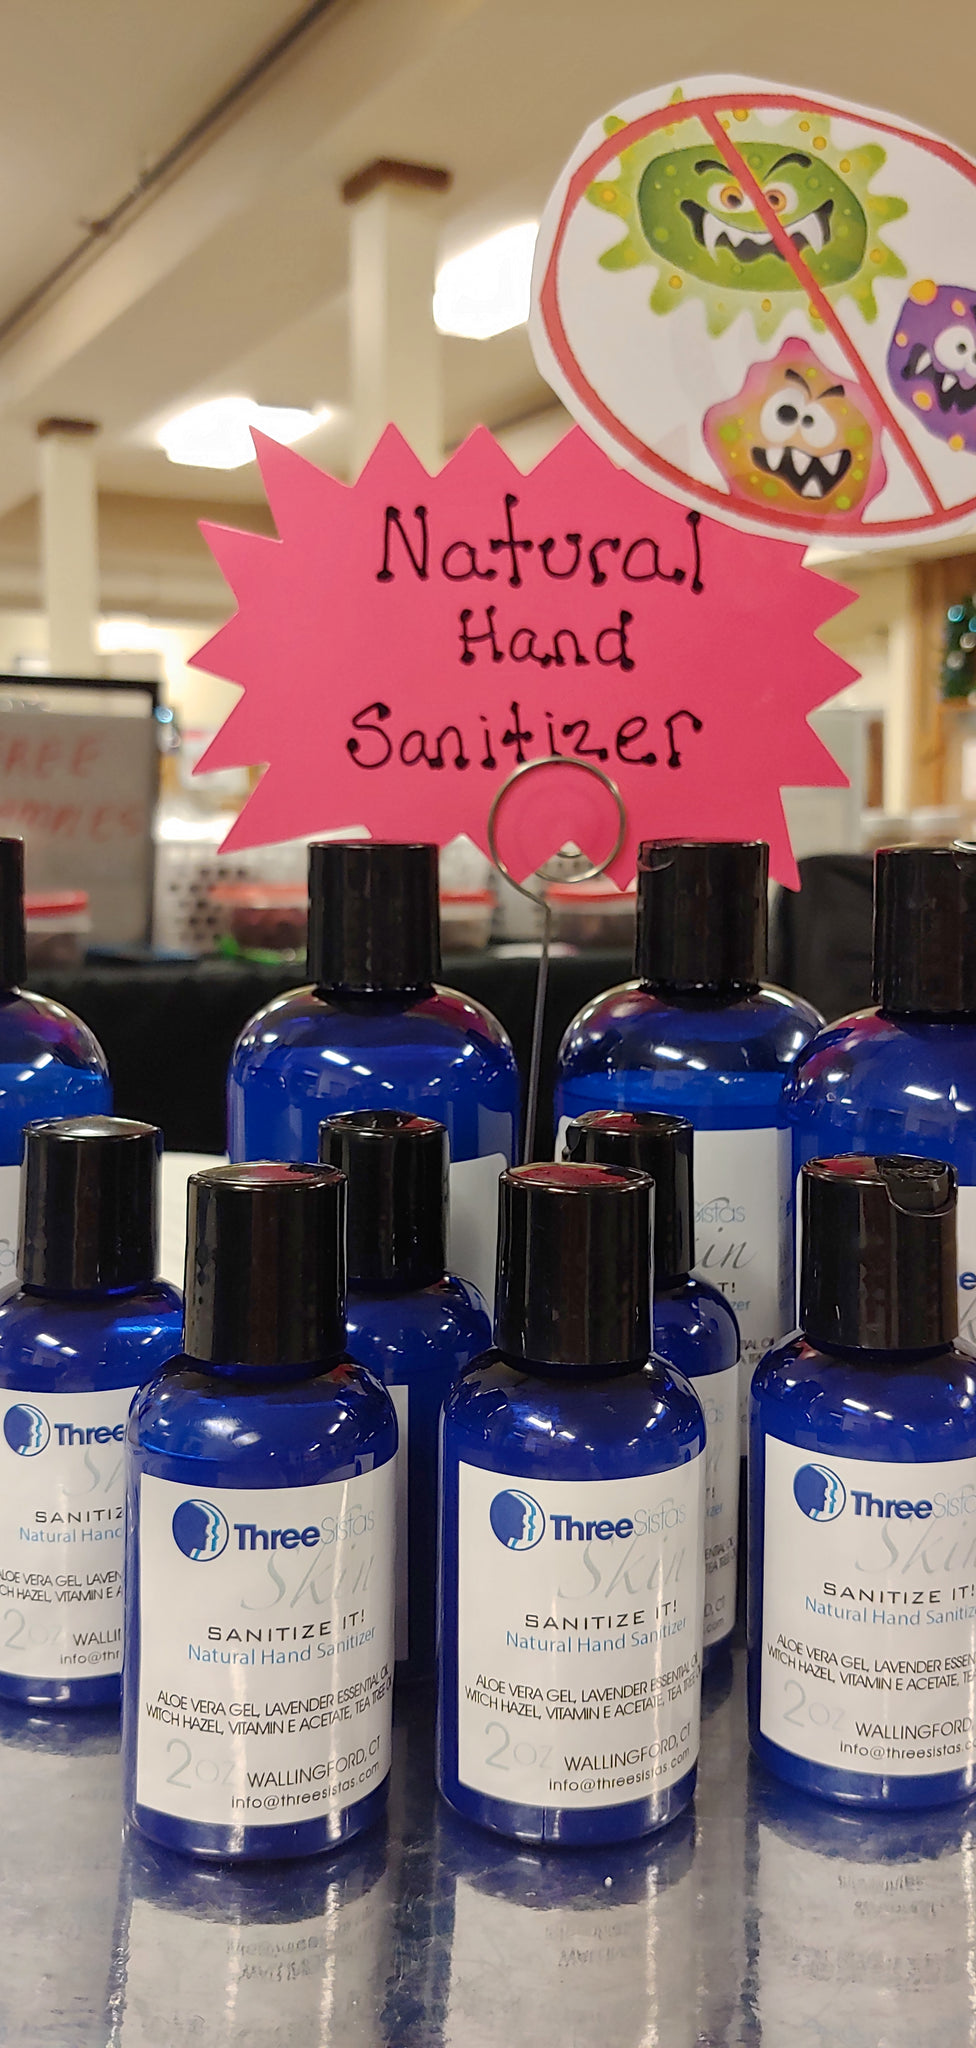 Natural Hand Sanitizer - yay!